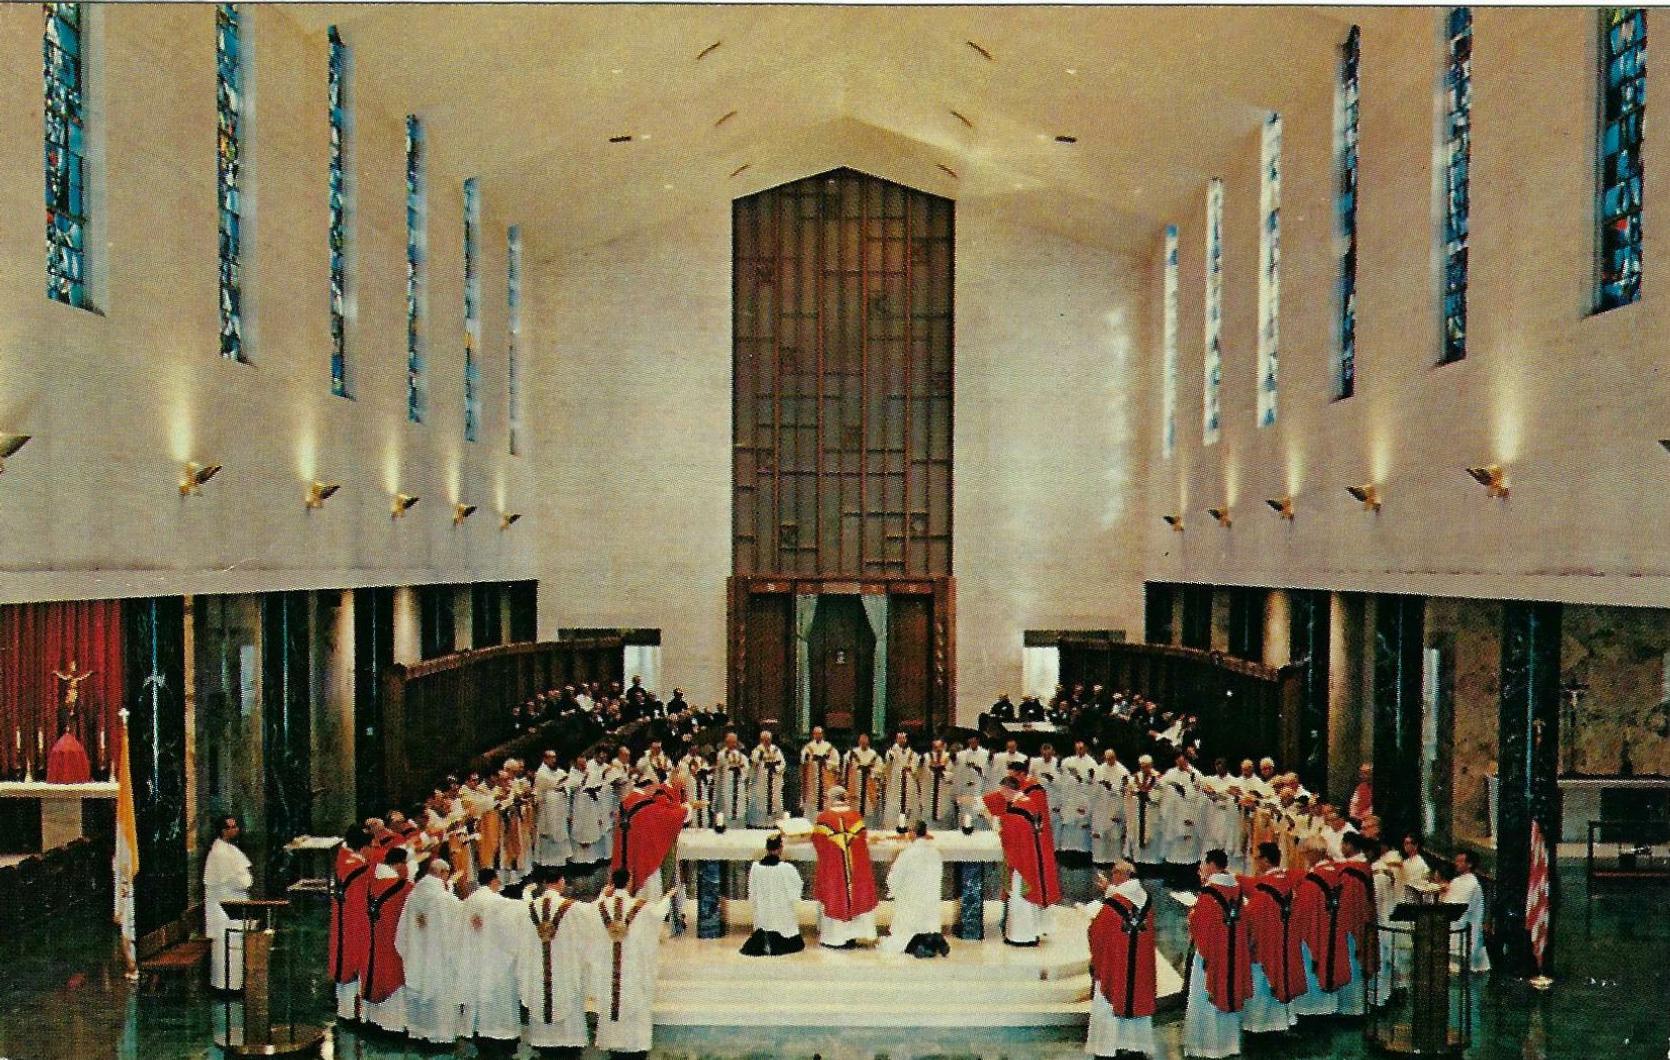 St. Norbert Abbey, Mass • 1965